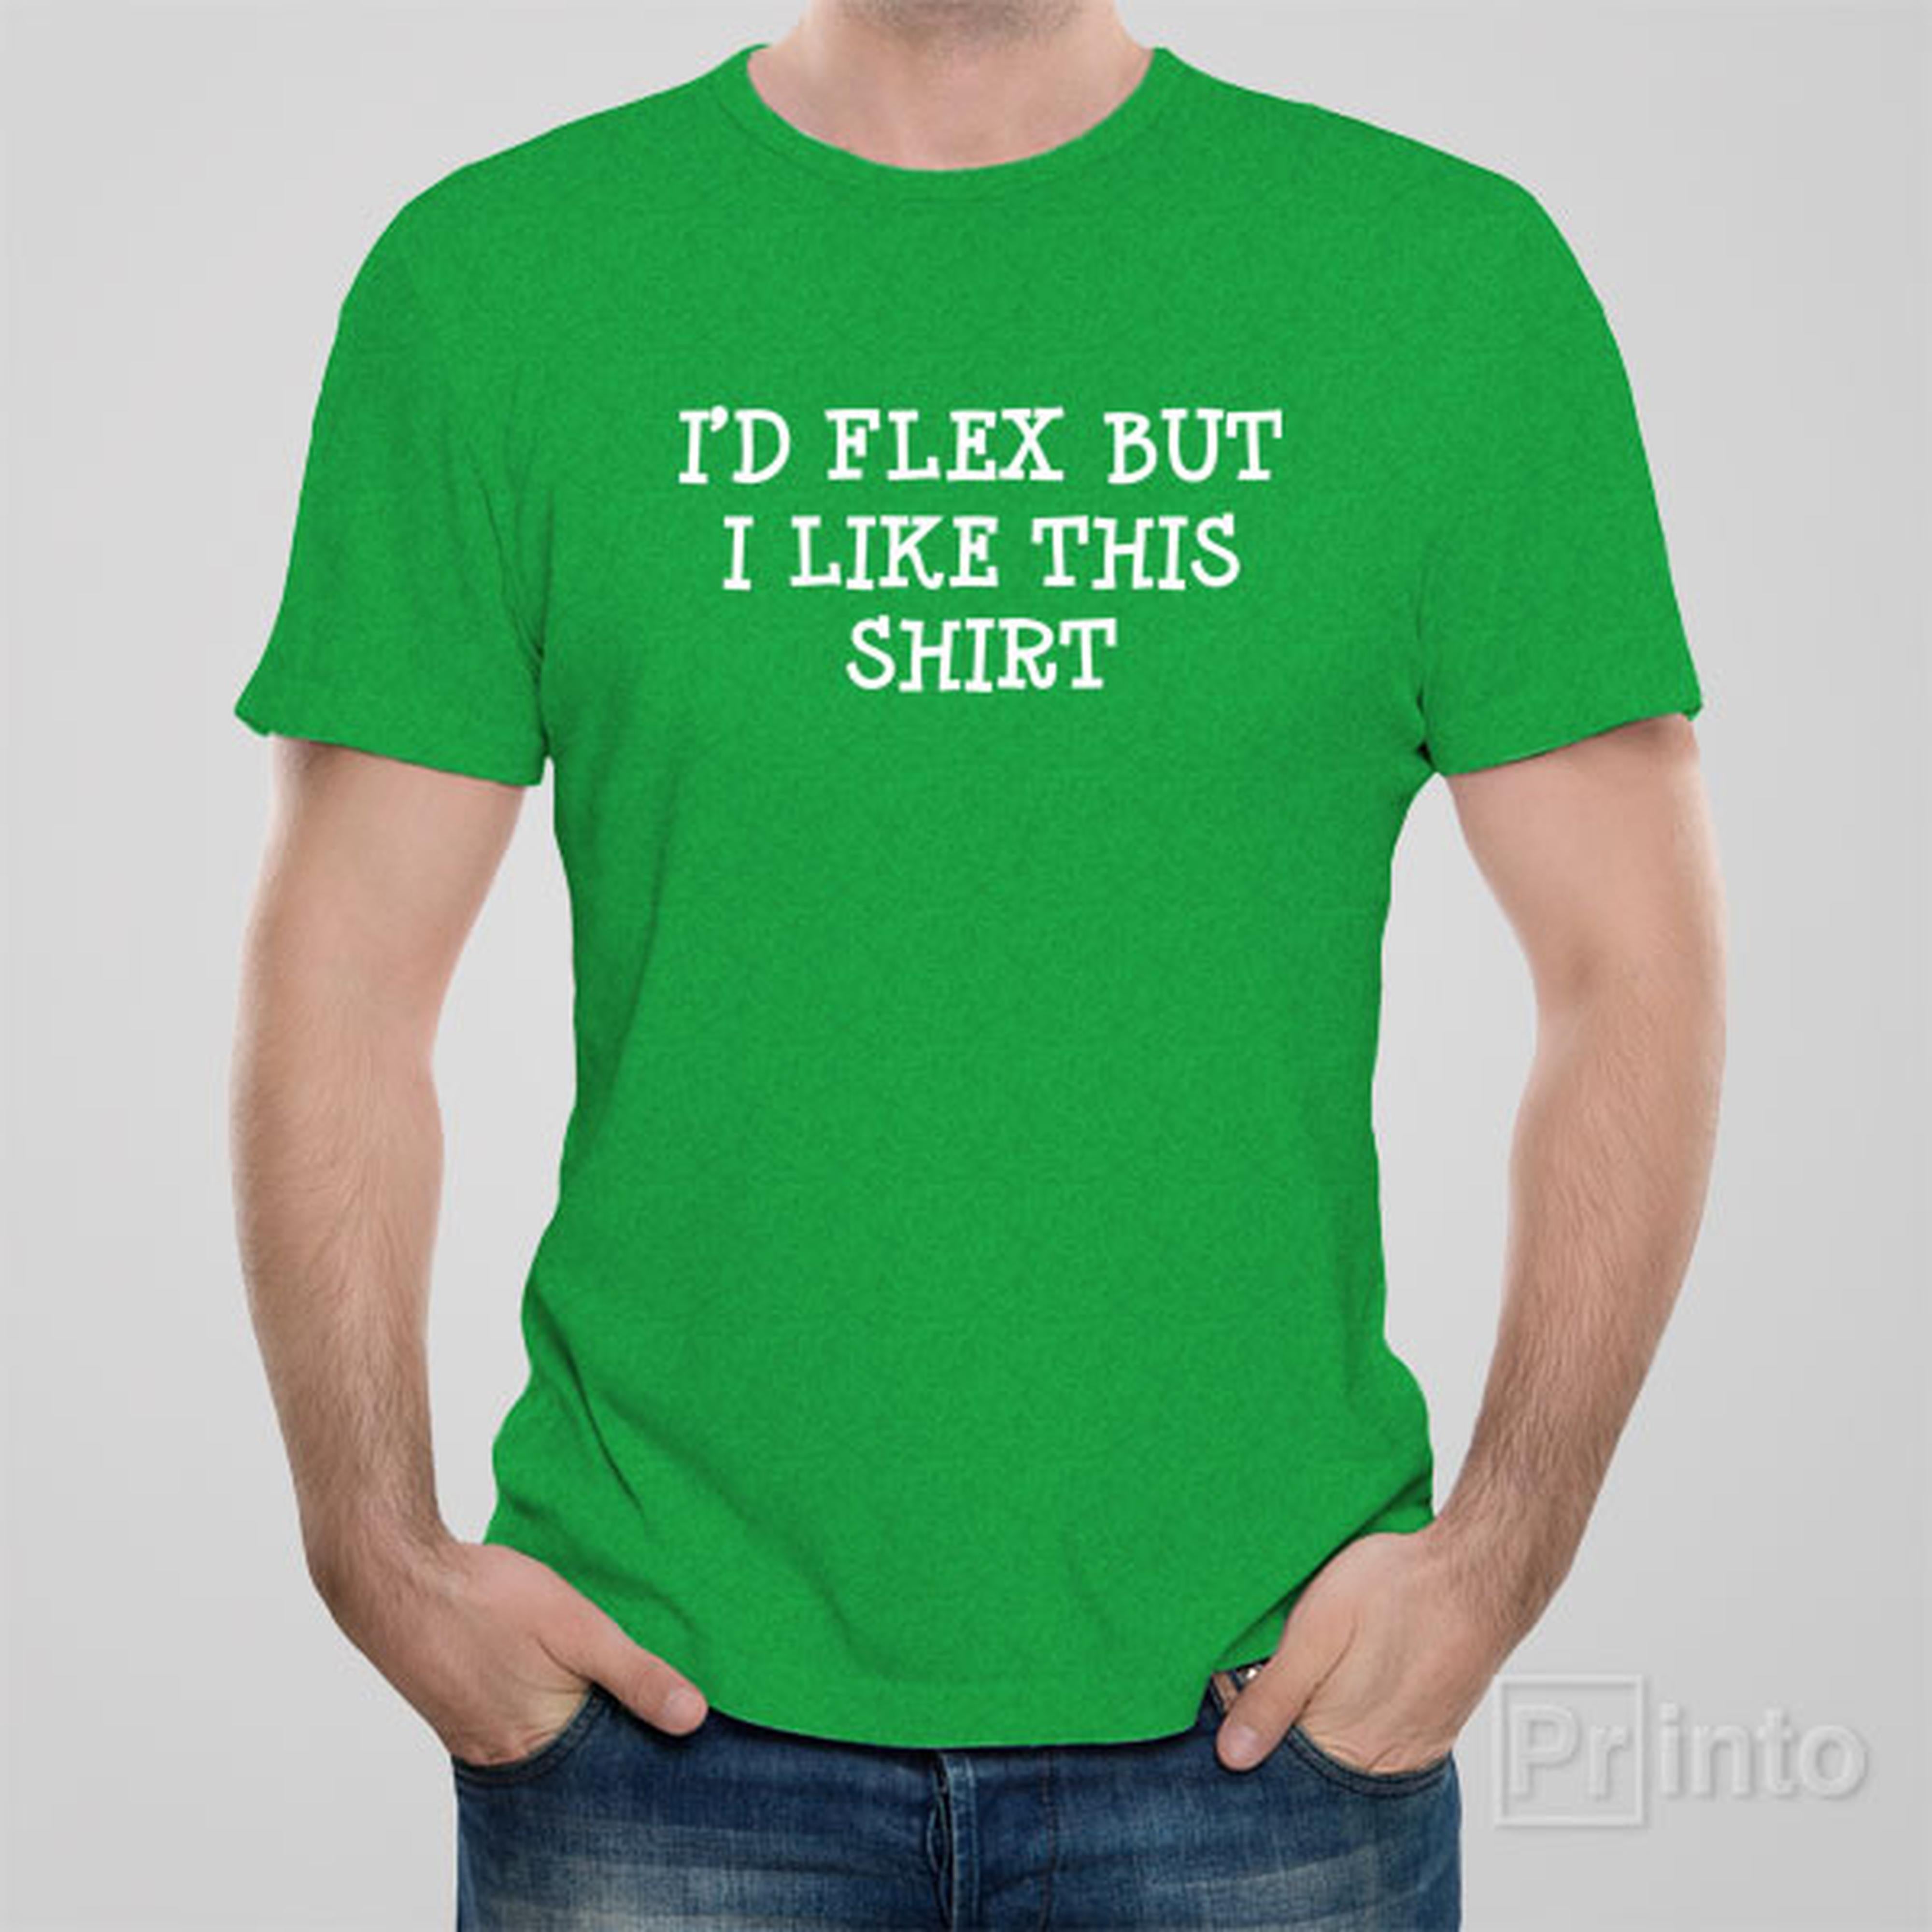 id-flex-but-i-like-this-shirt-t-shirt